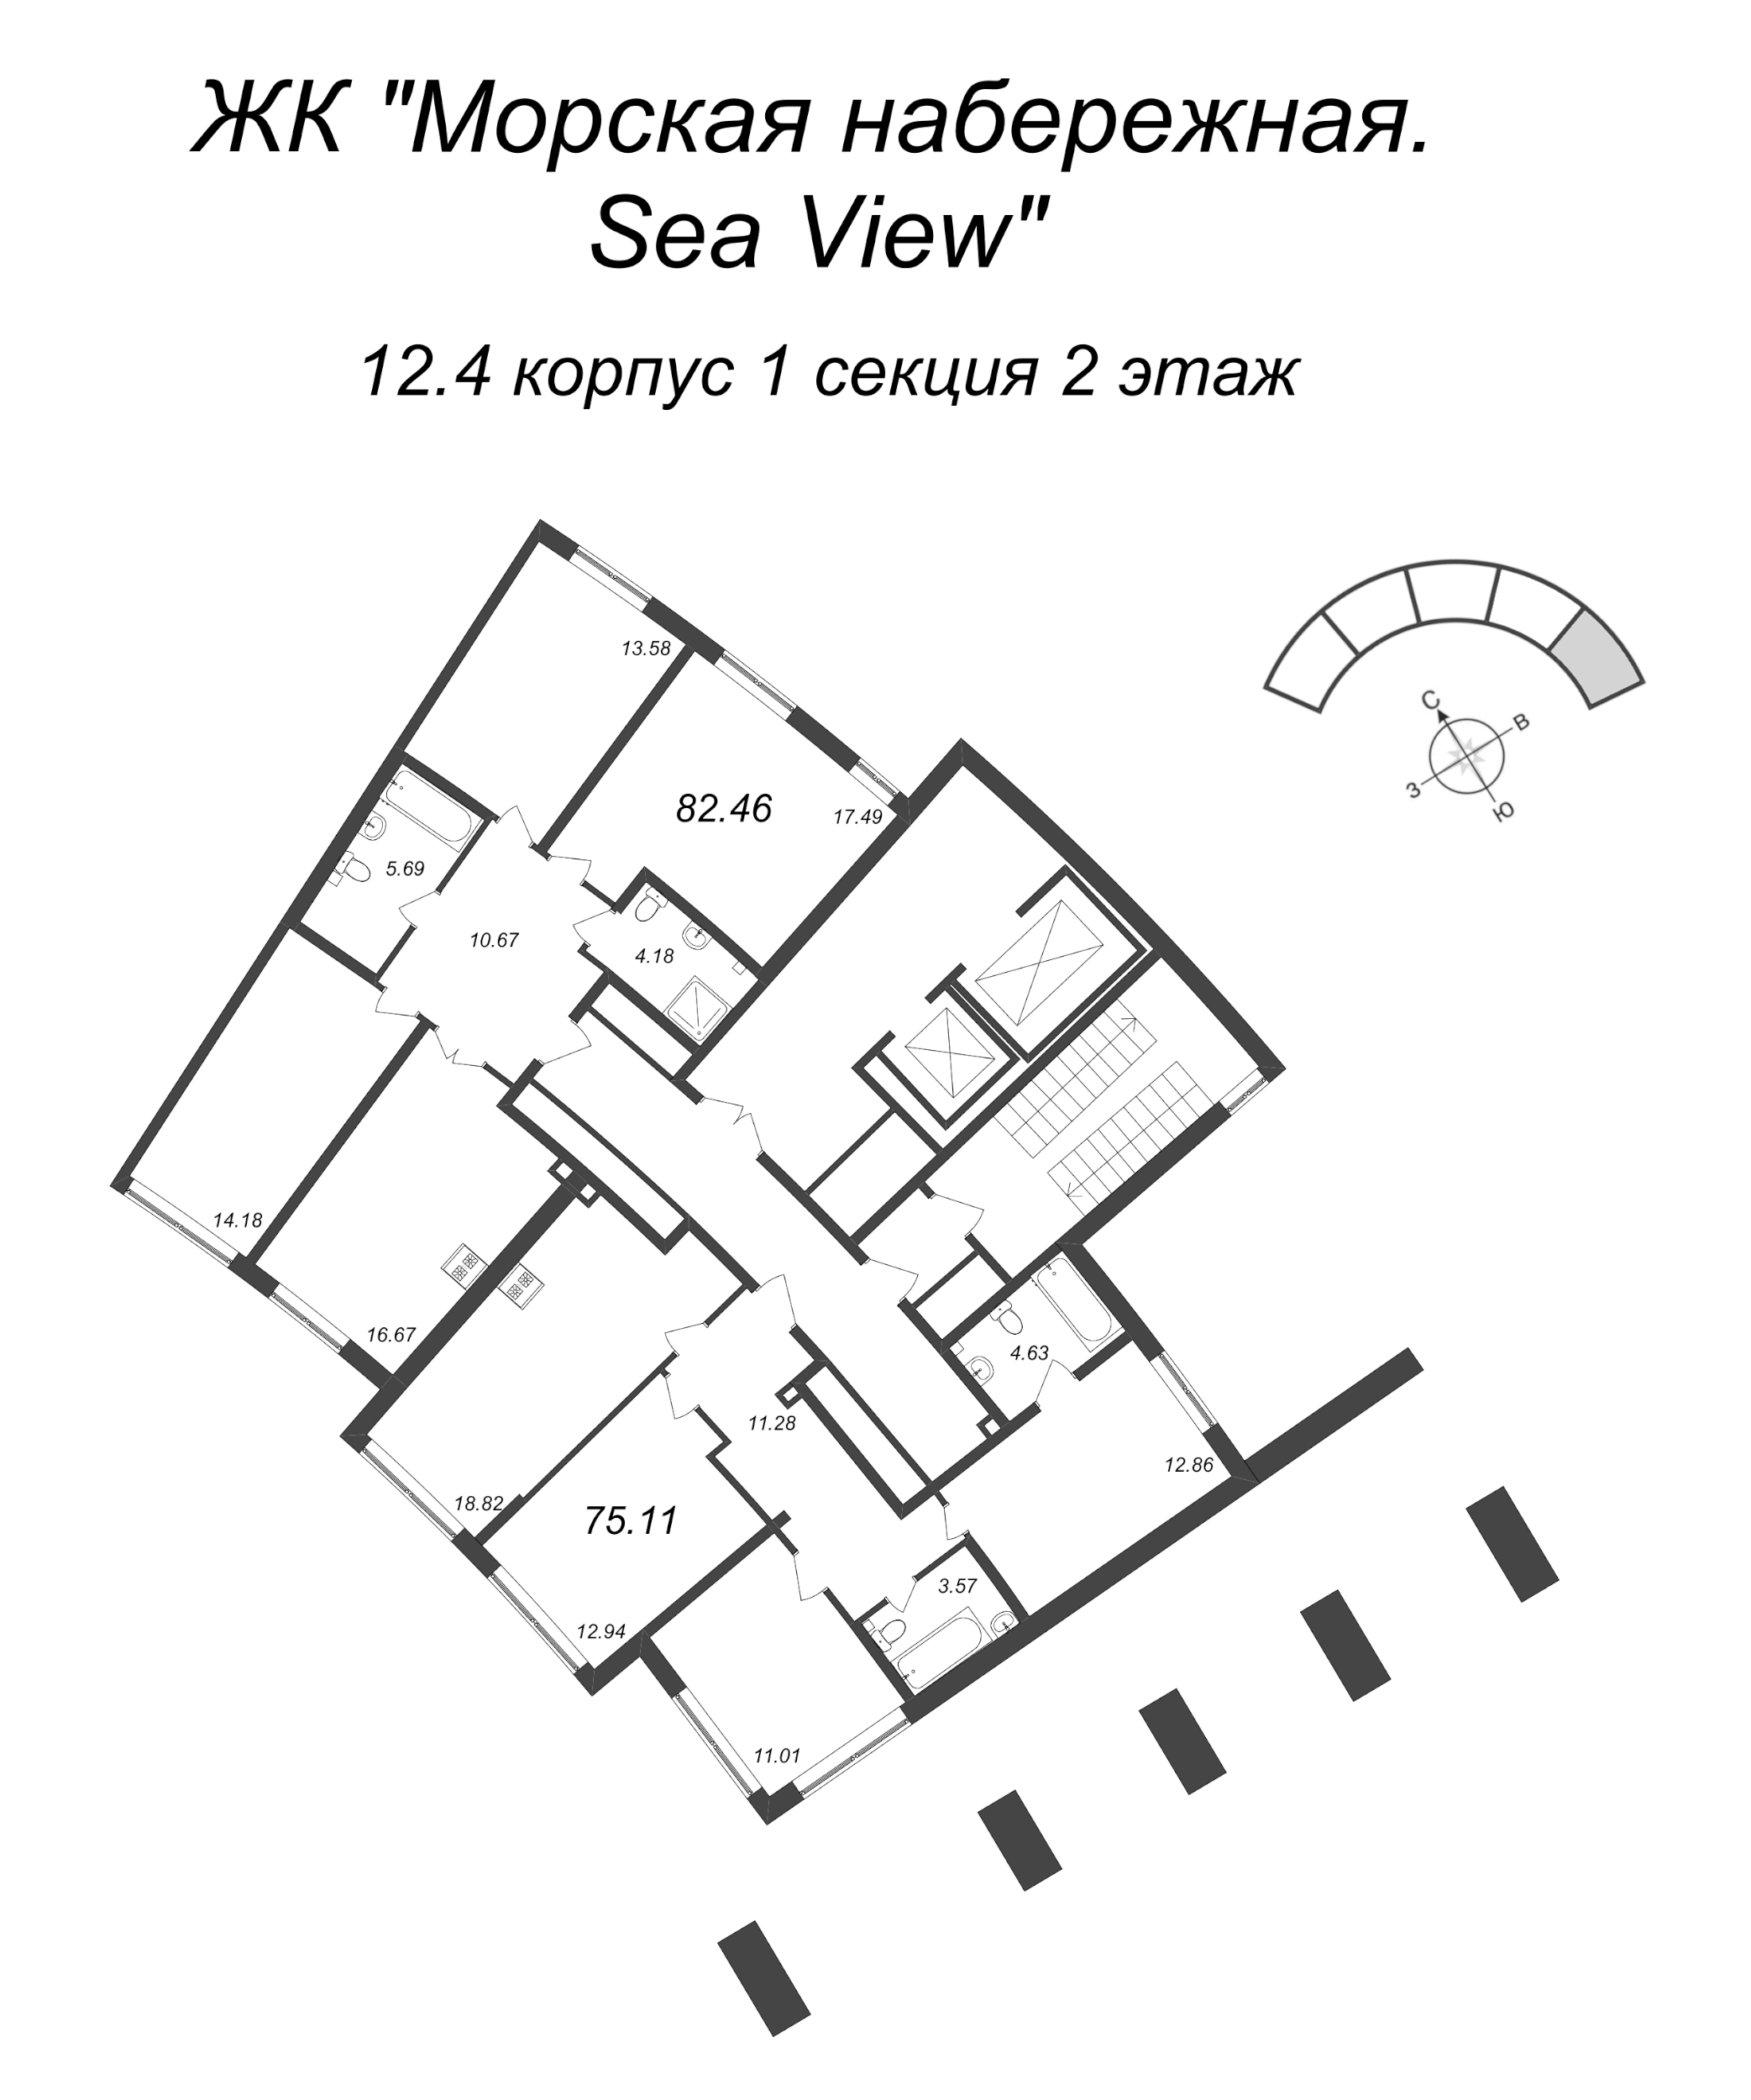 4-комнатная (Евро) квартира, 75.11 м² в ЖК "Морская набережная. SeaView" - планировка этажа